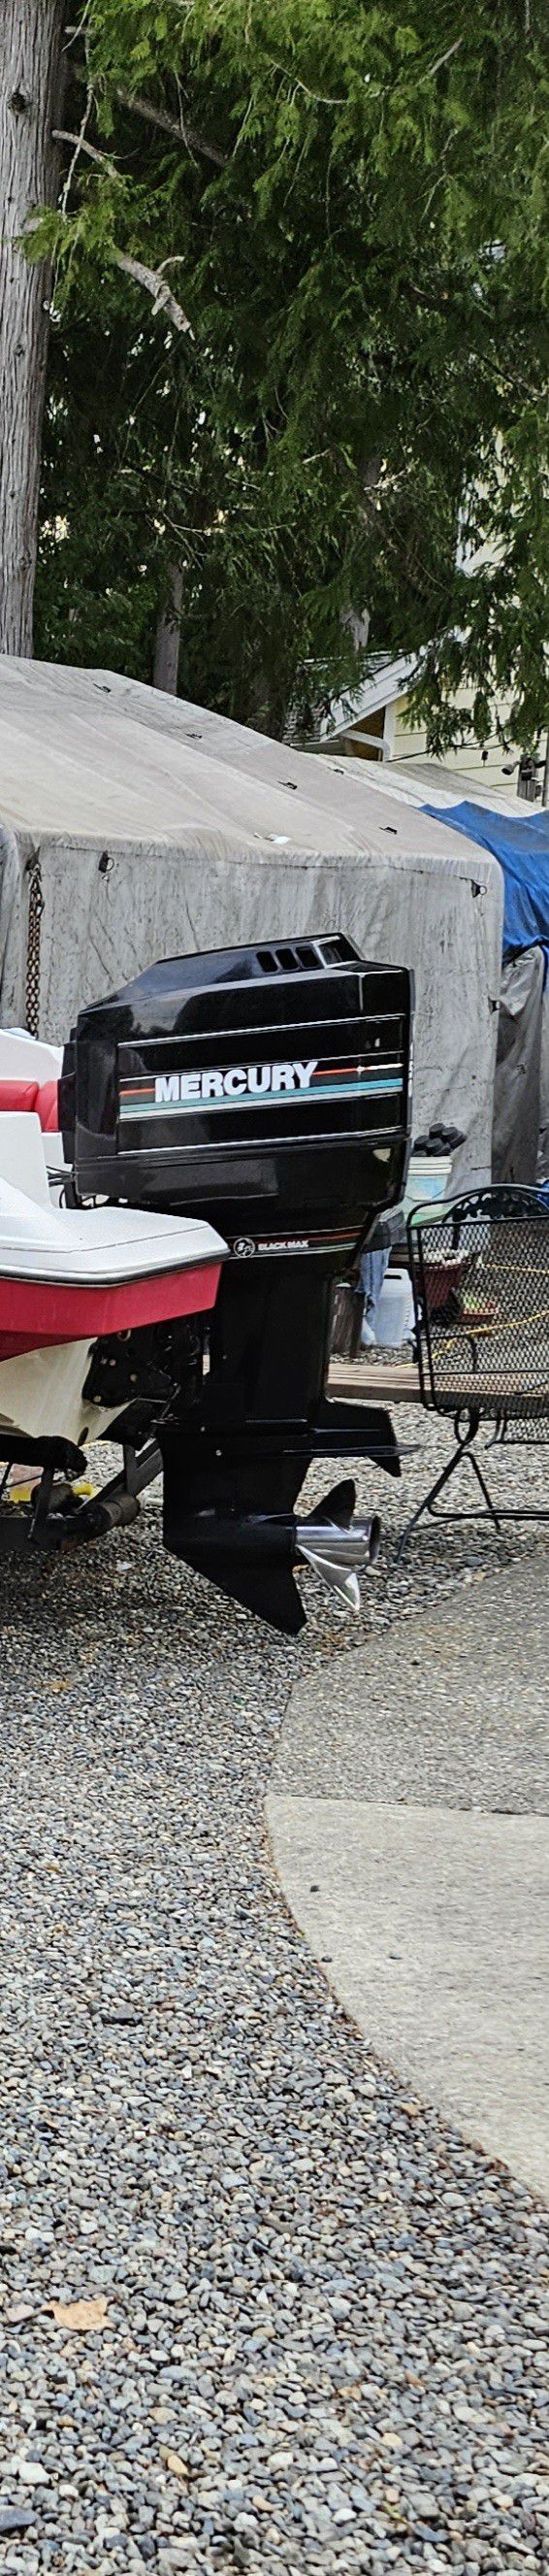 1992 Mercury 2 stoke outboard 150 hp